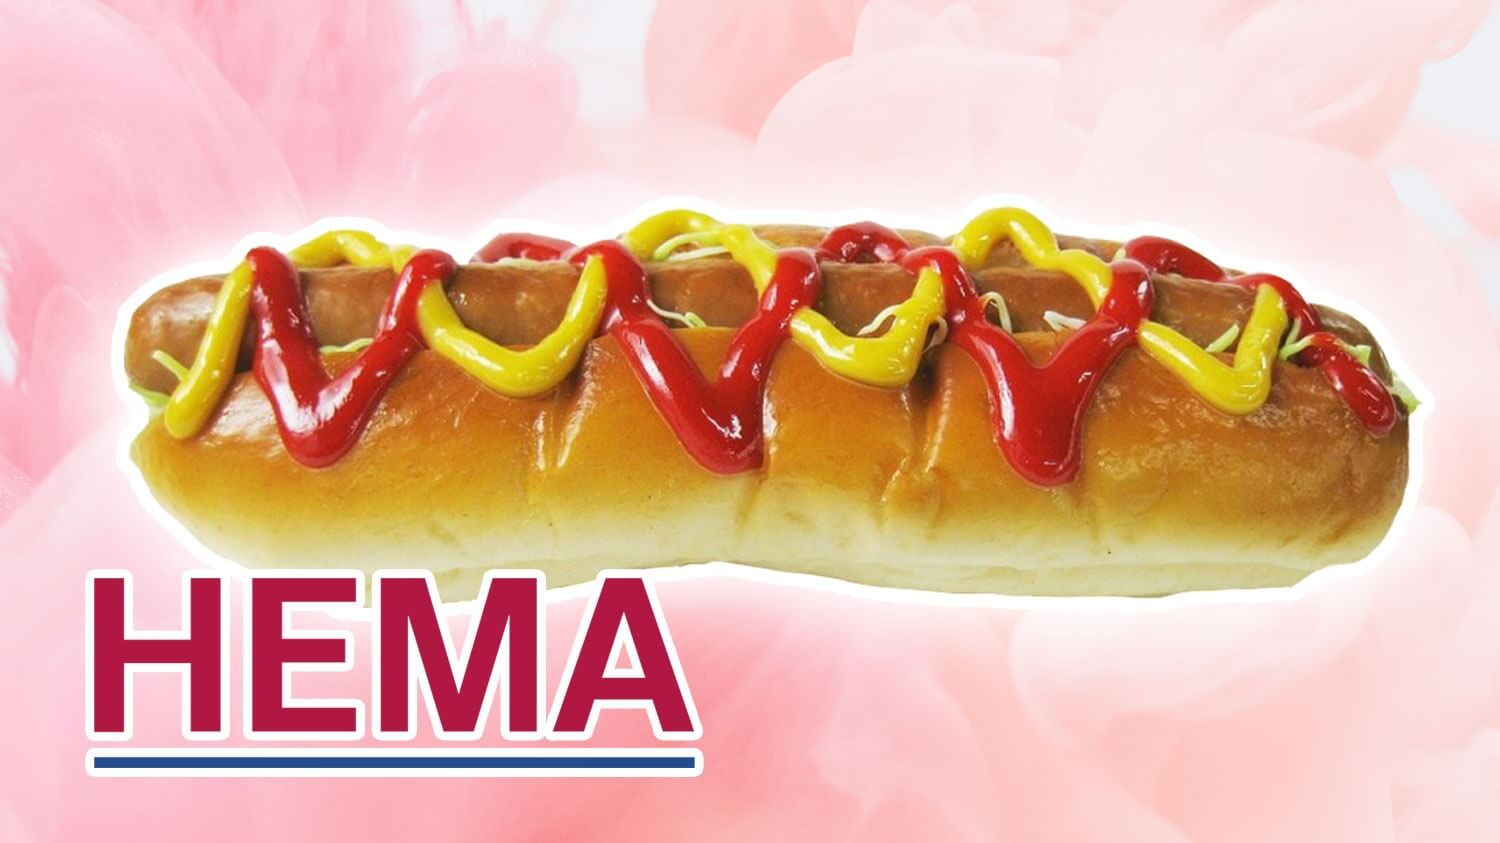 gewoon Viva Andere plaatsen Dutch Discount Store HEMA Launches €2 Vegan Hot Dogs